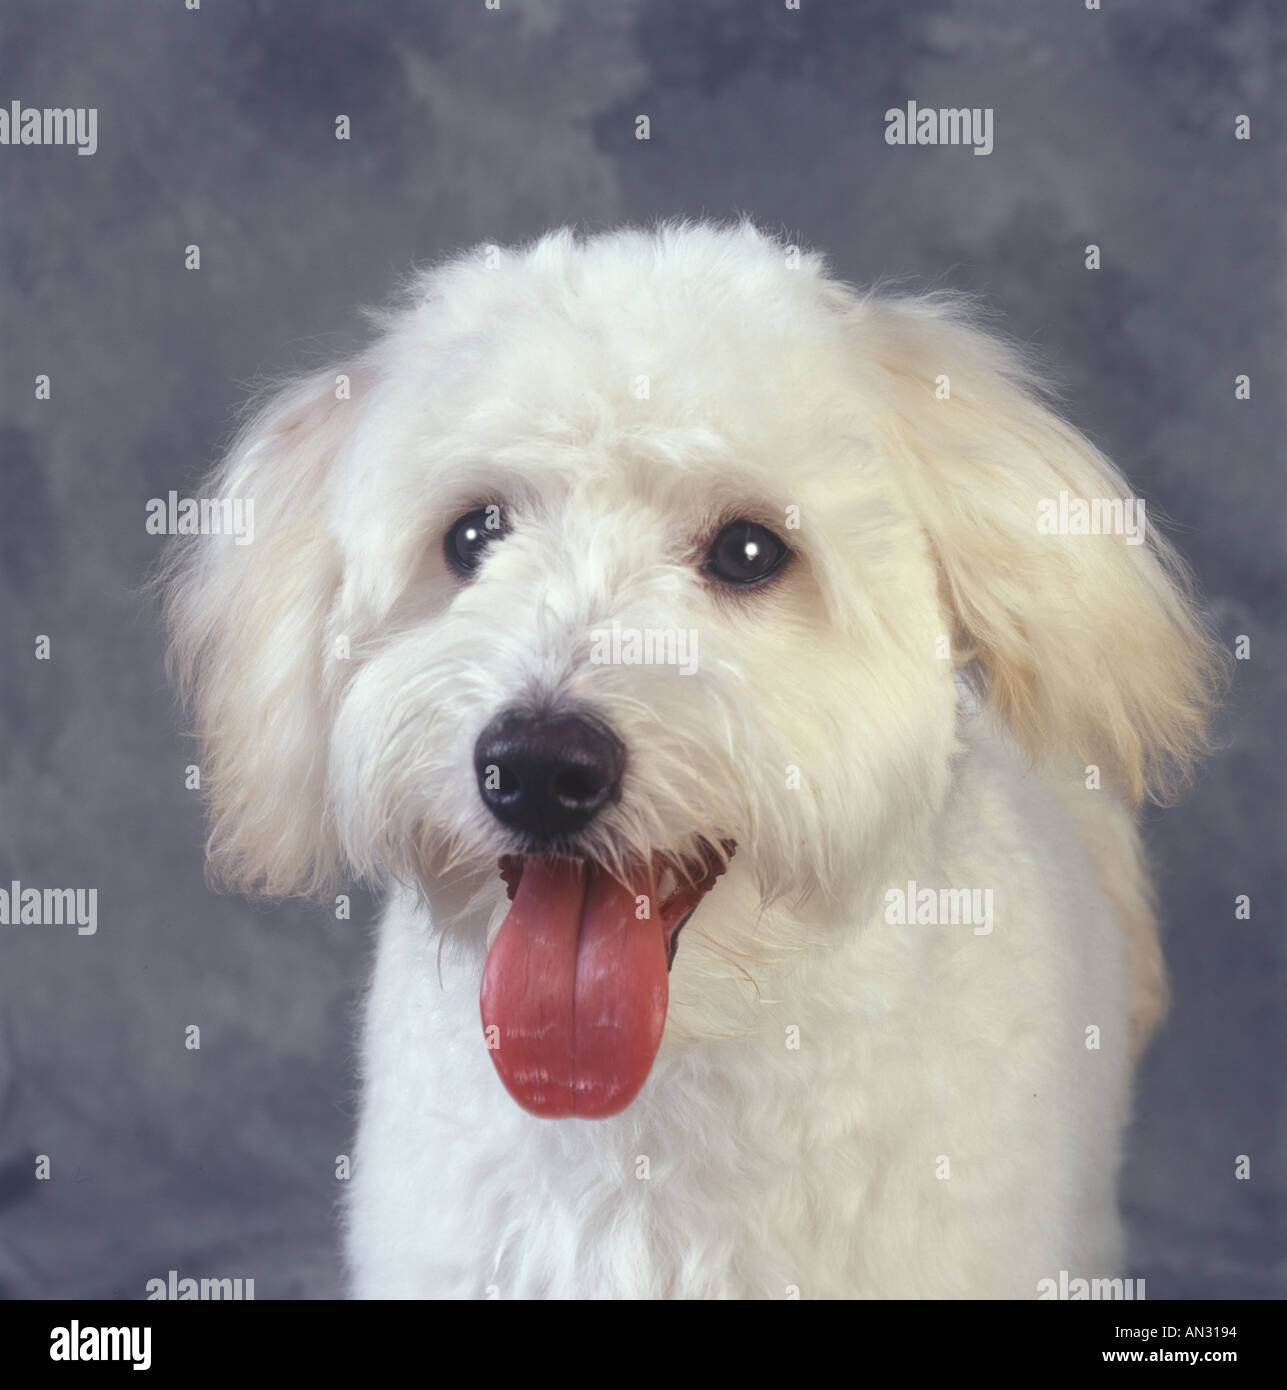 White Dog Portrait Stock Photo